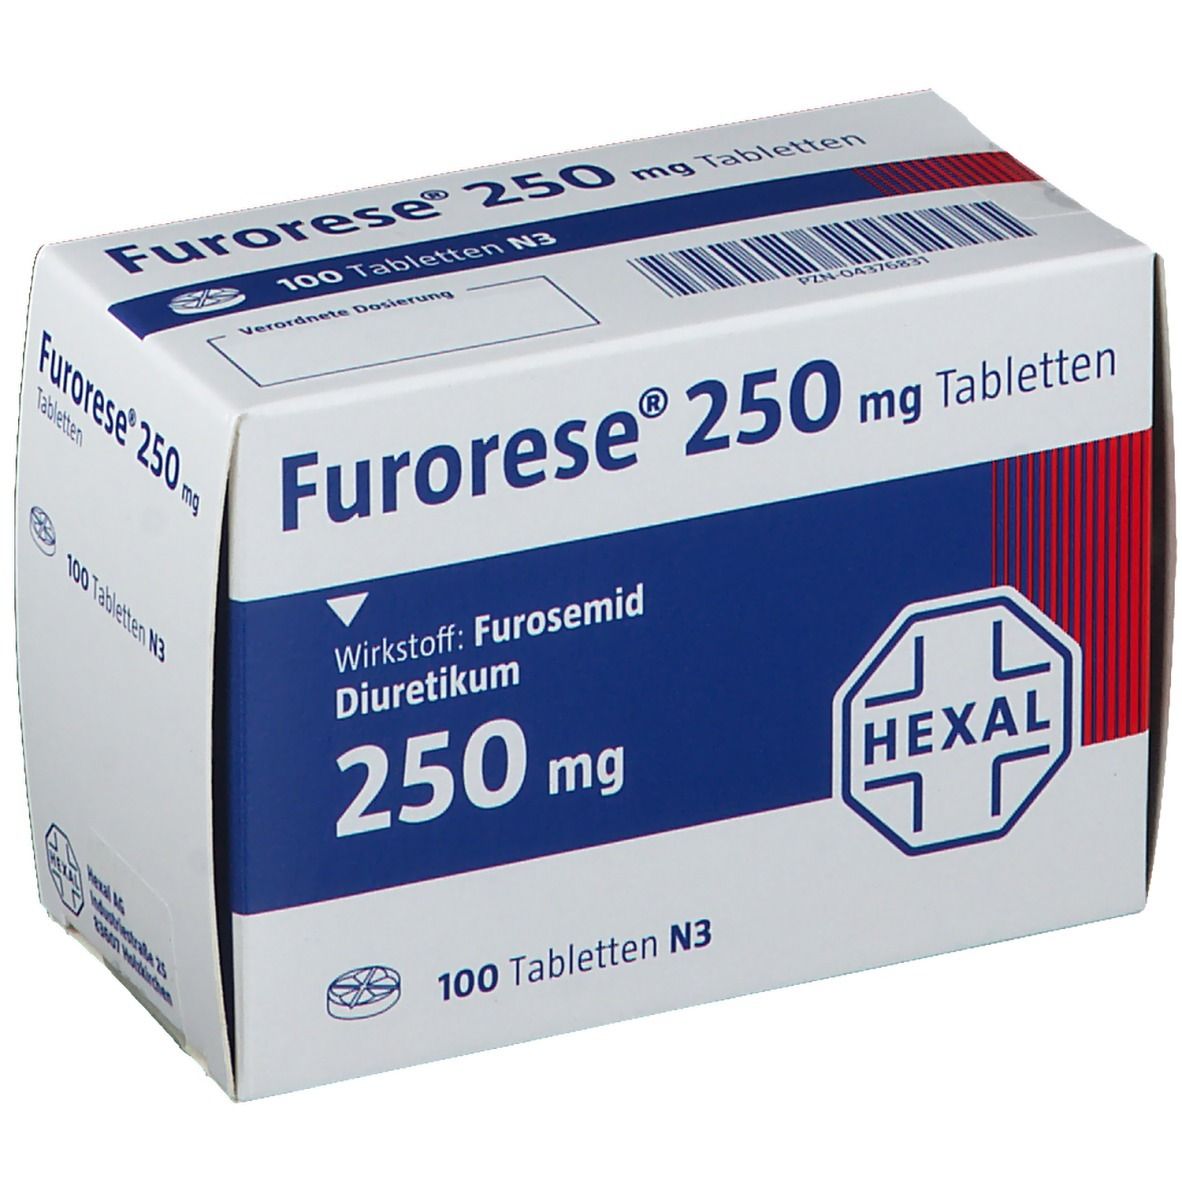 Furorese® 250 mg